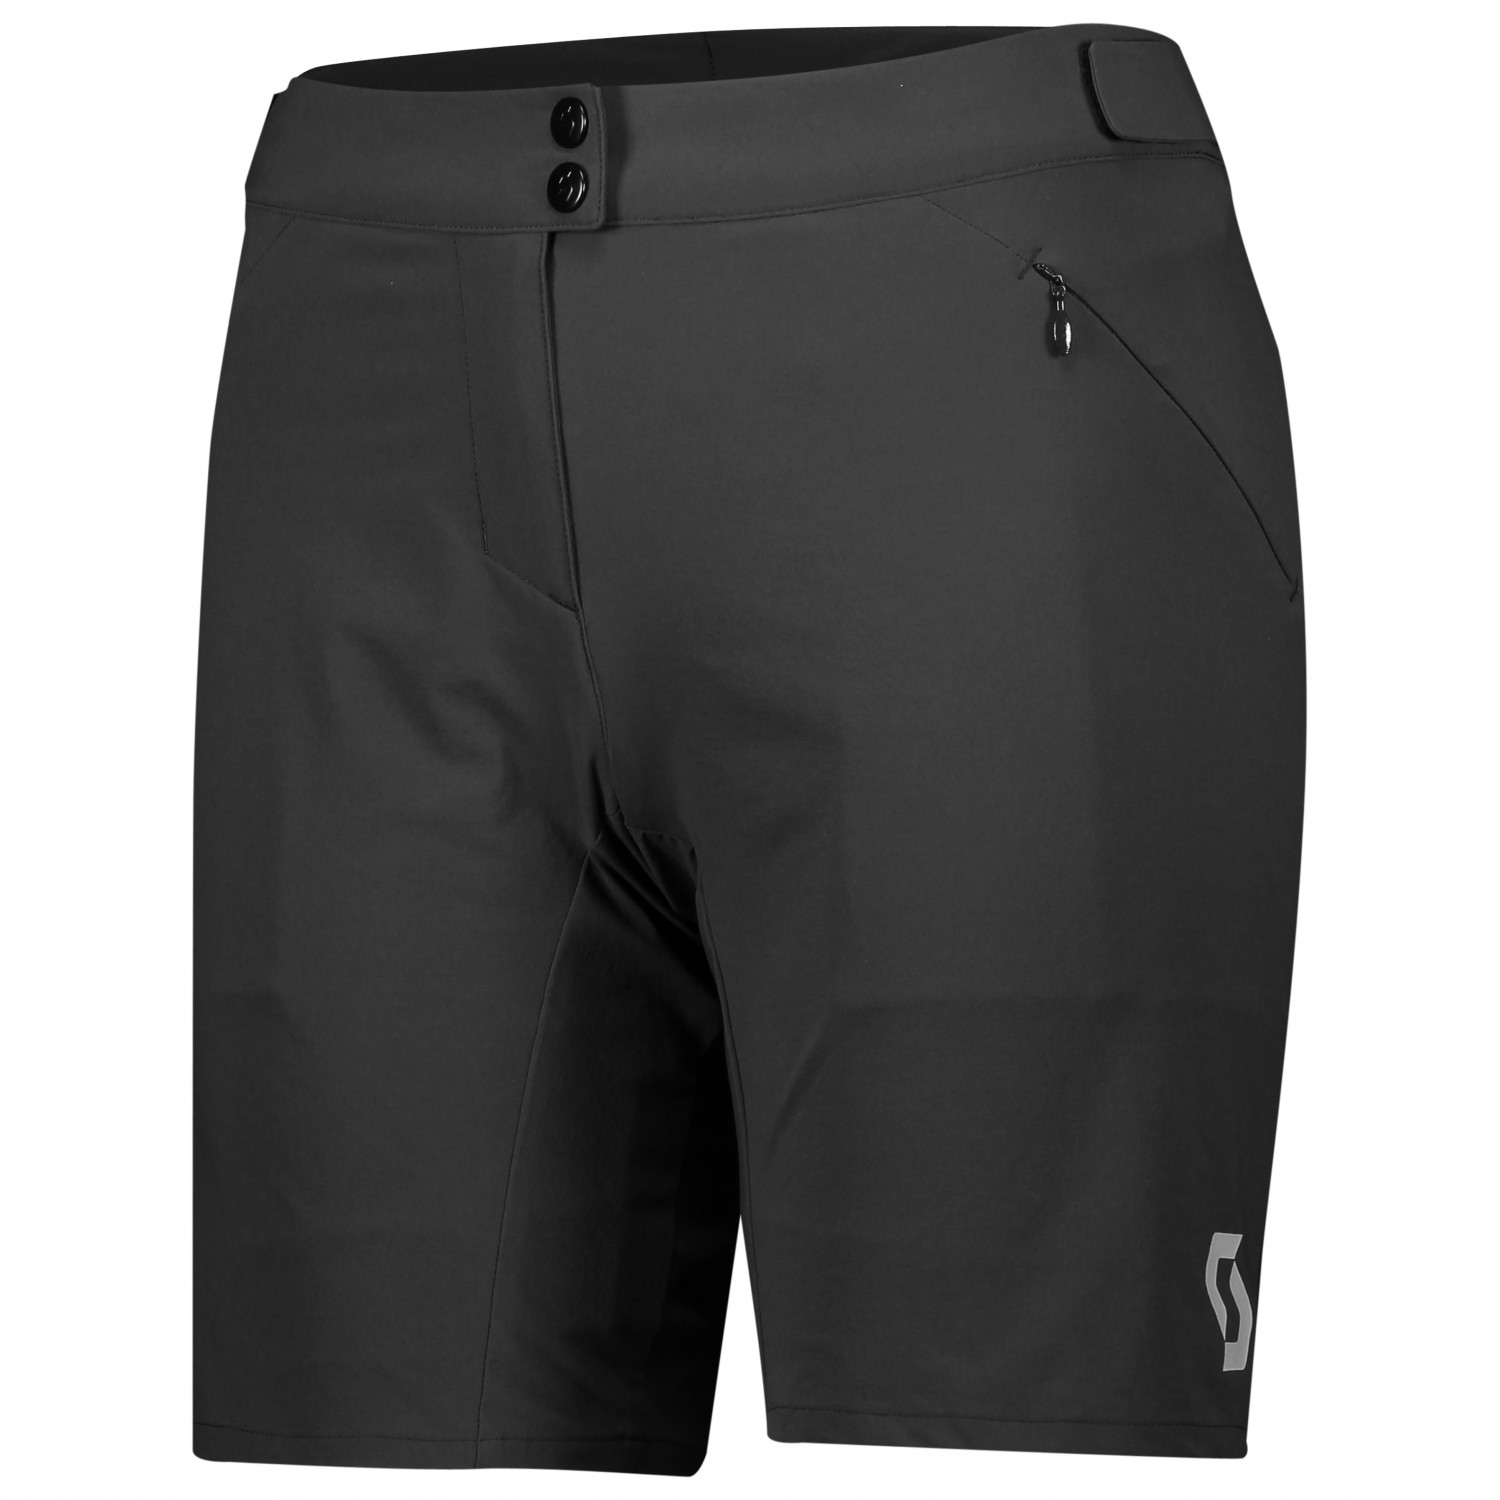 Велосипедные шорты Scott Women's Shorts Endurance Loose Fit with Pad, черный пазл origami лесные тропинки с плакатом 02854 35 дет